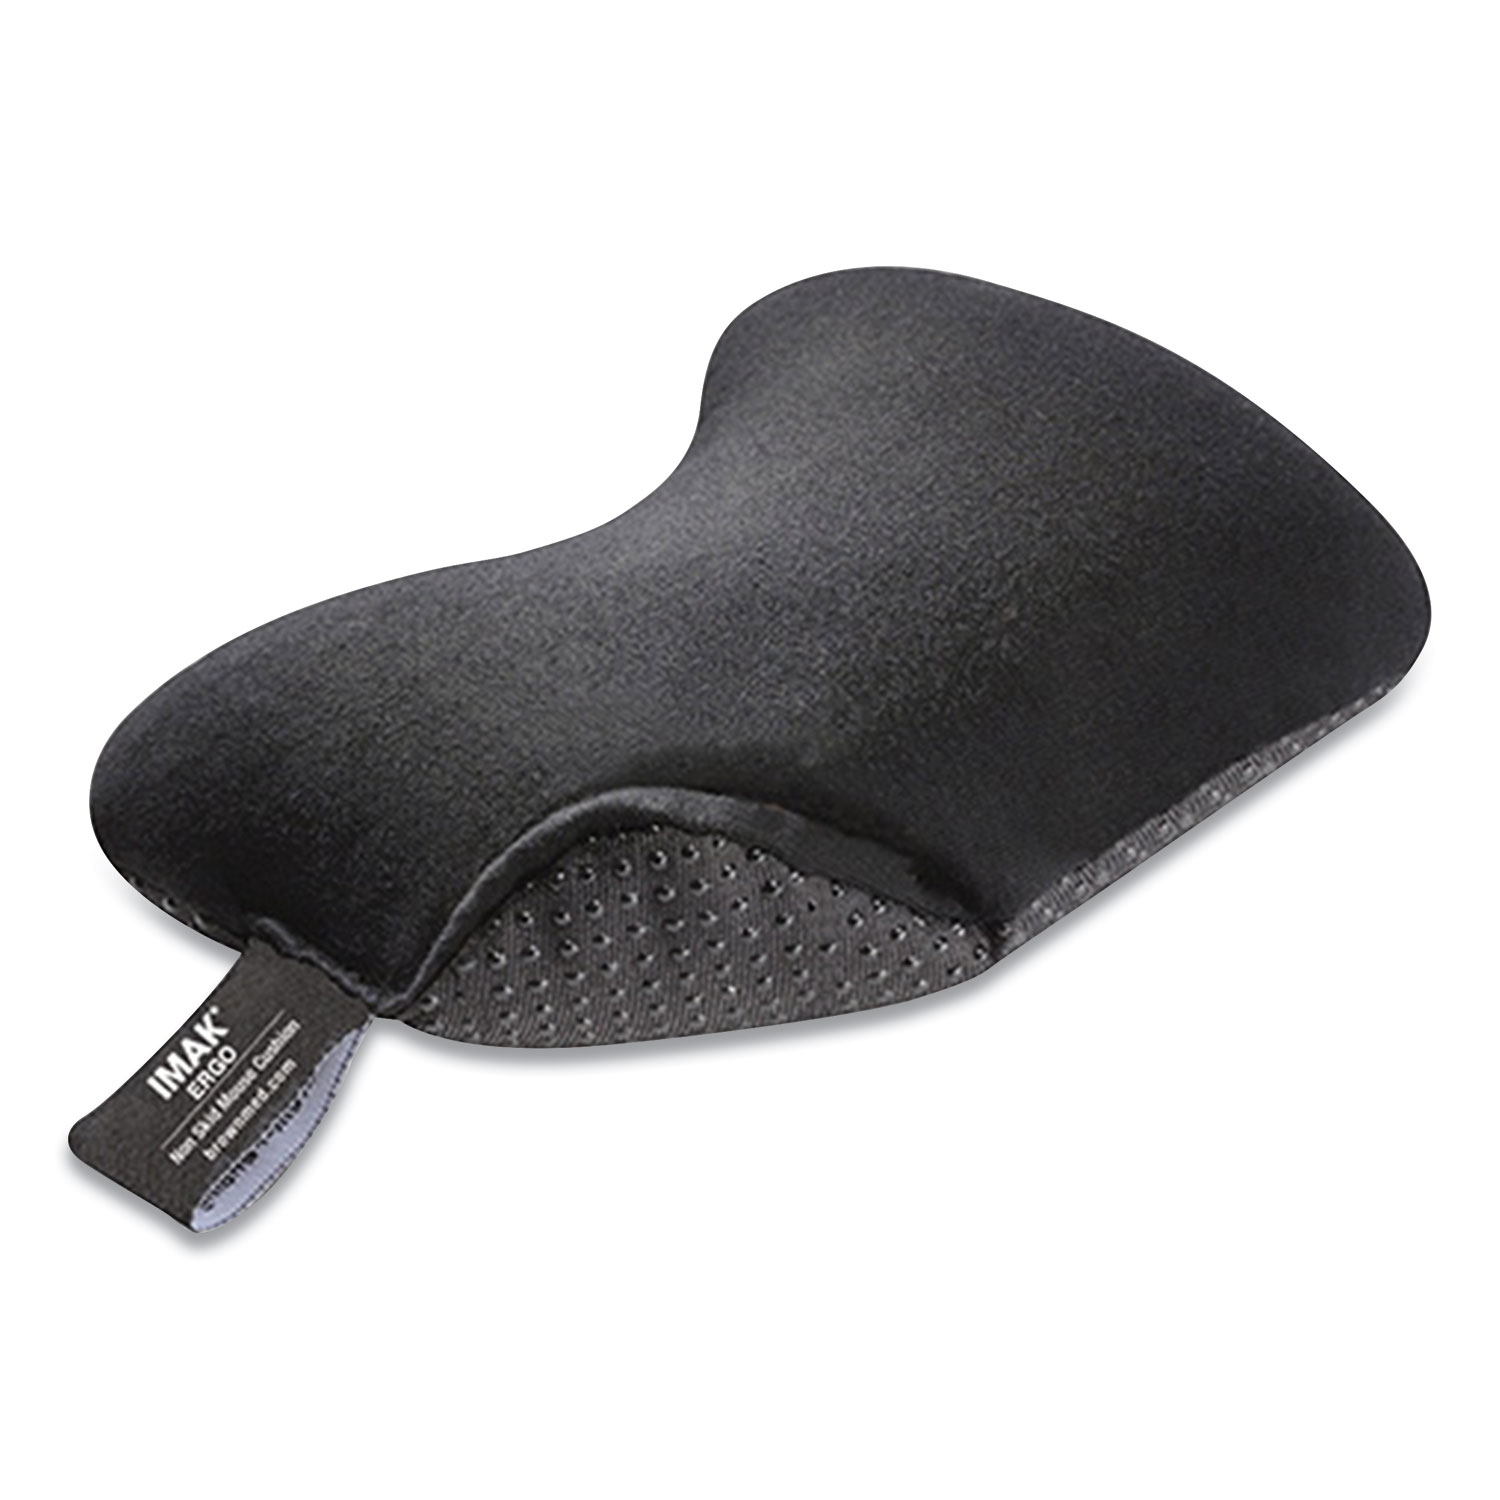  IMAK Ergo A10174 Nonskid Mouse Wrist Cushion, 7 x 5.3, Black (IMA659889) 